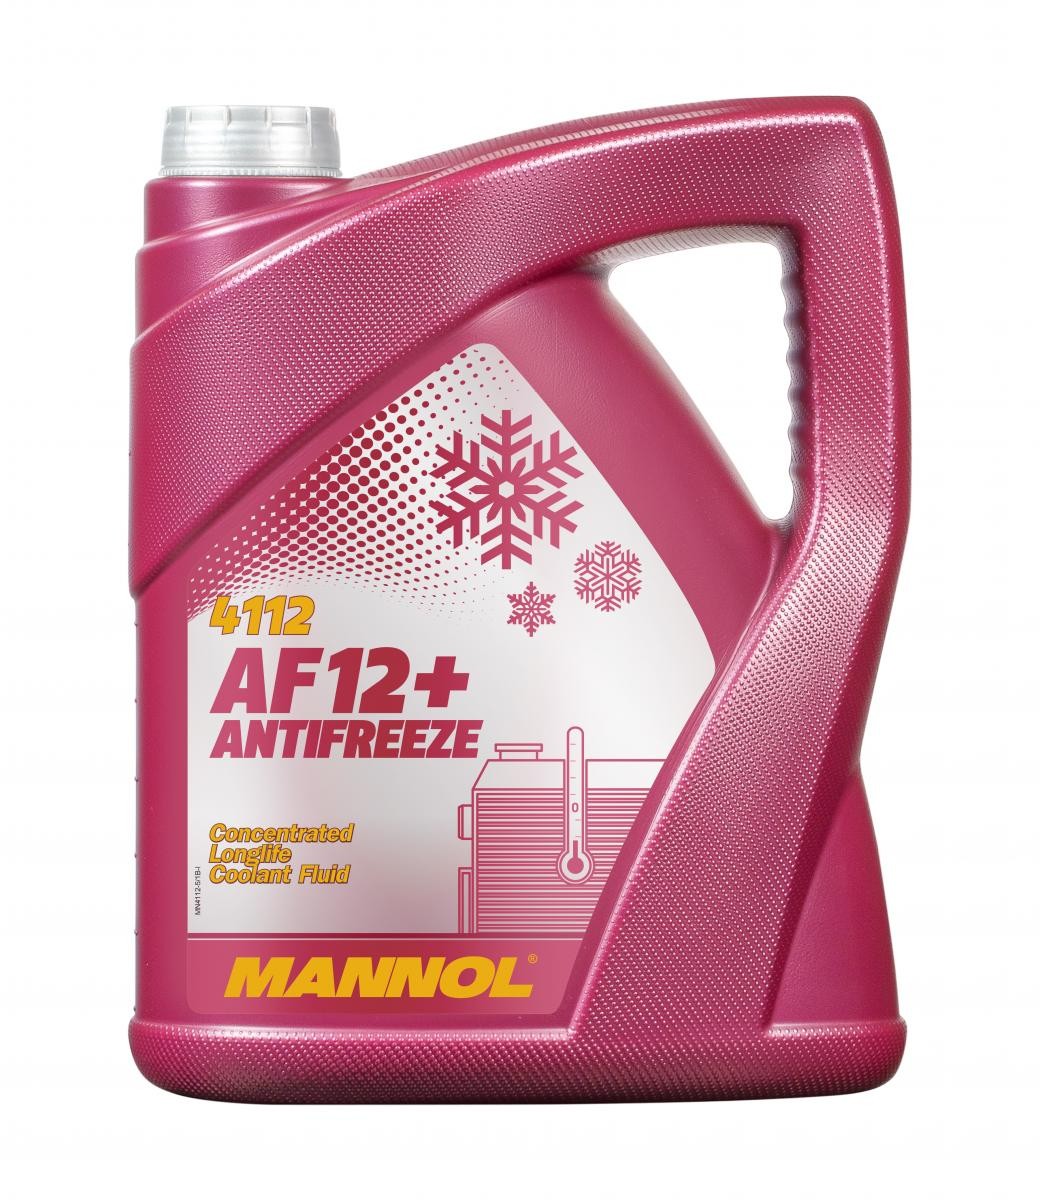 Naročite MN4112-5 MANNOL Sredstvo proti zmrzovanju hladilne vode (antifriz) zdaj